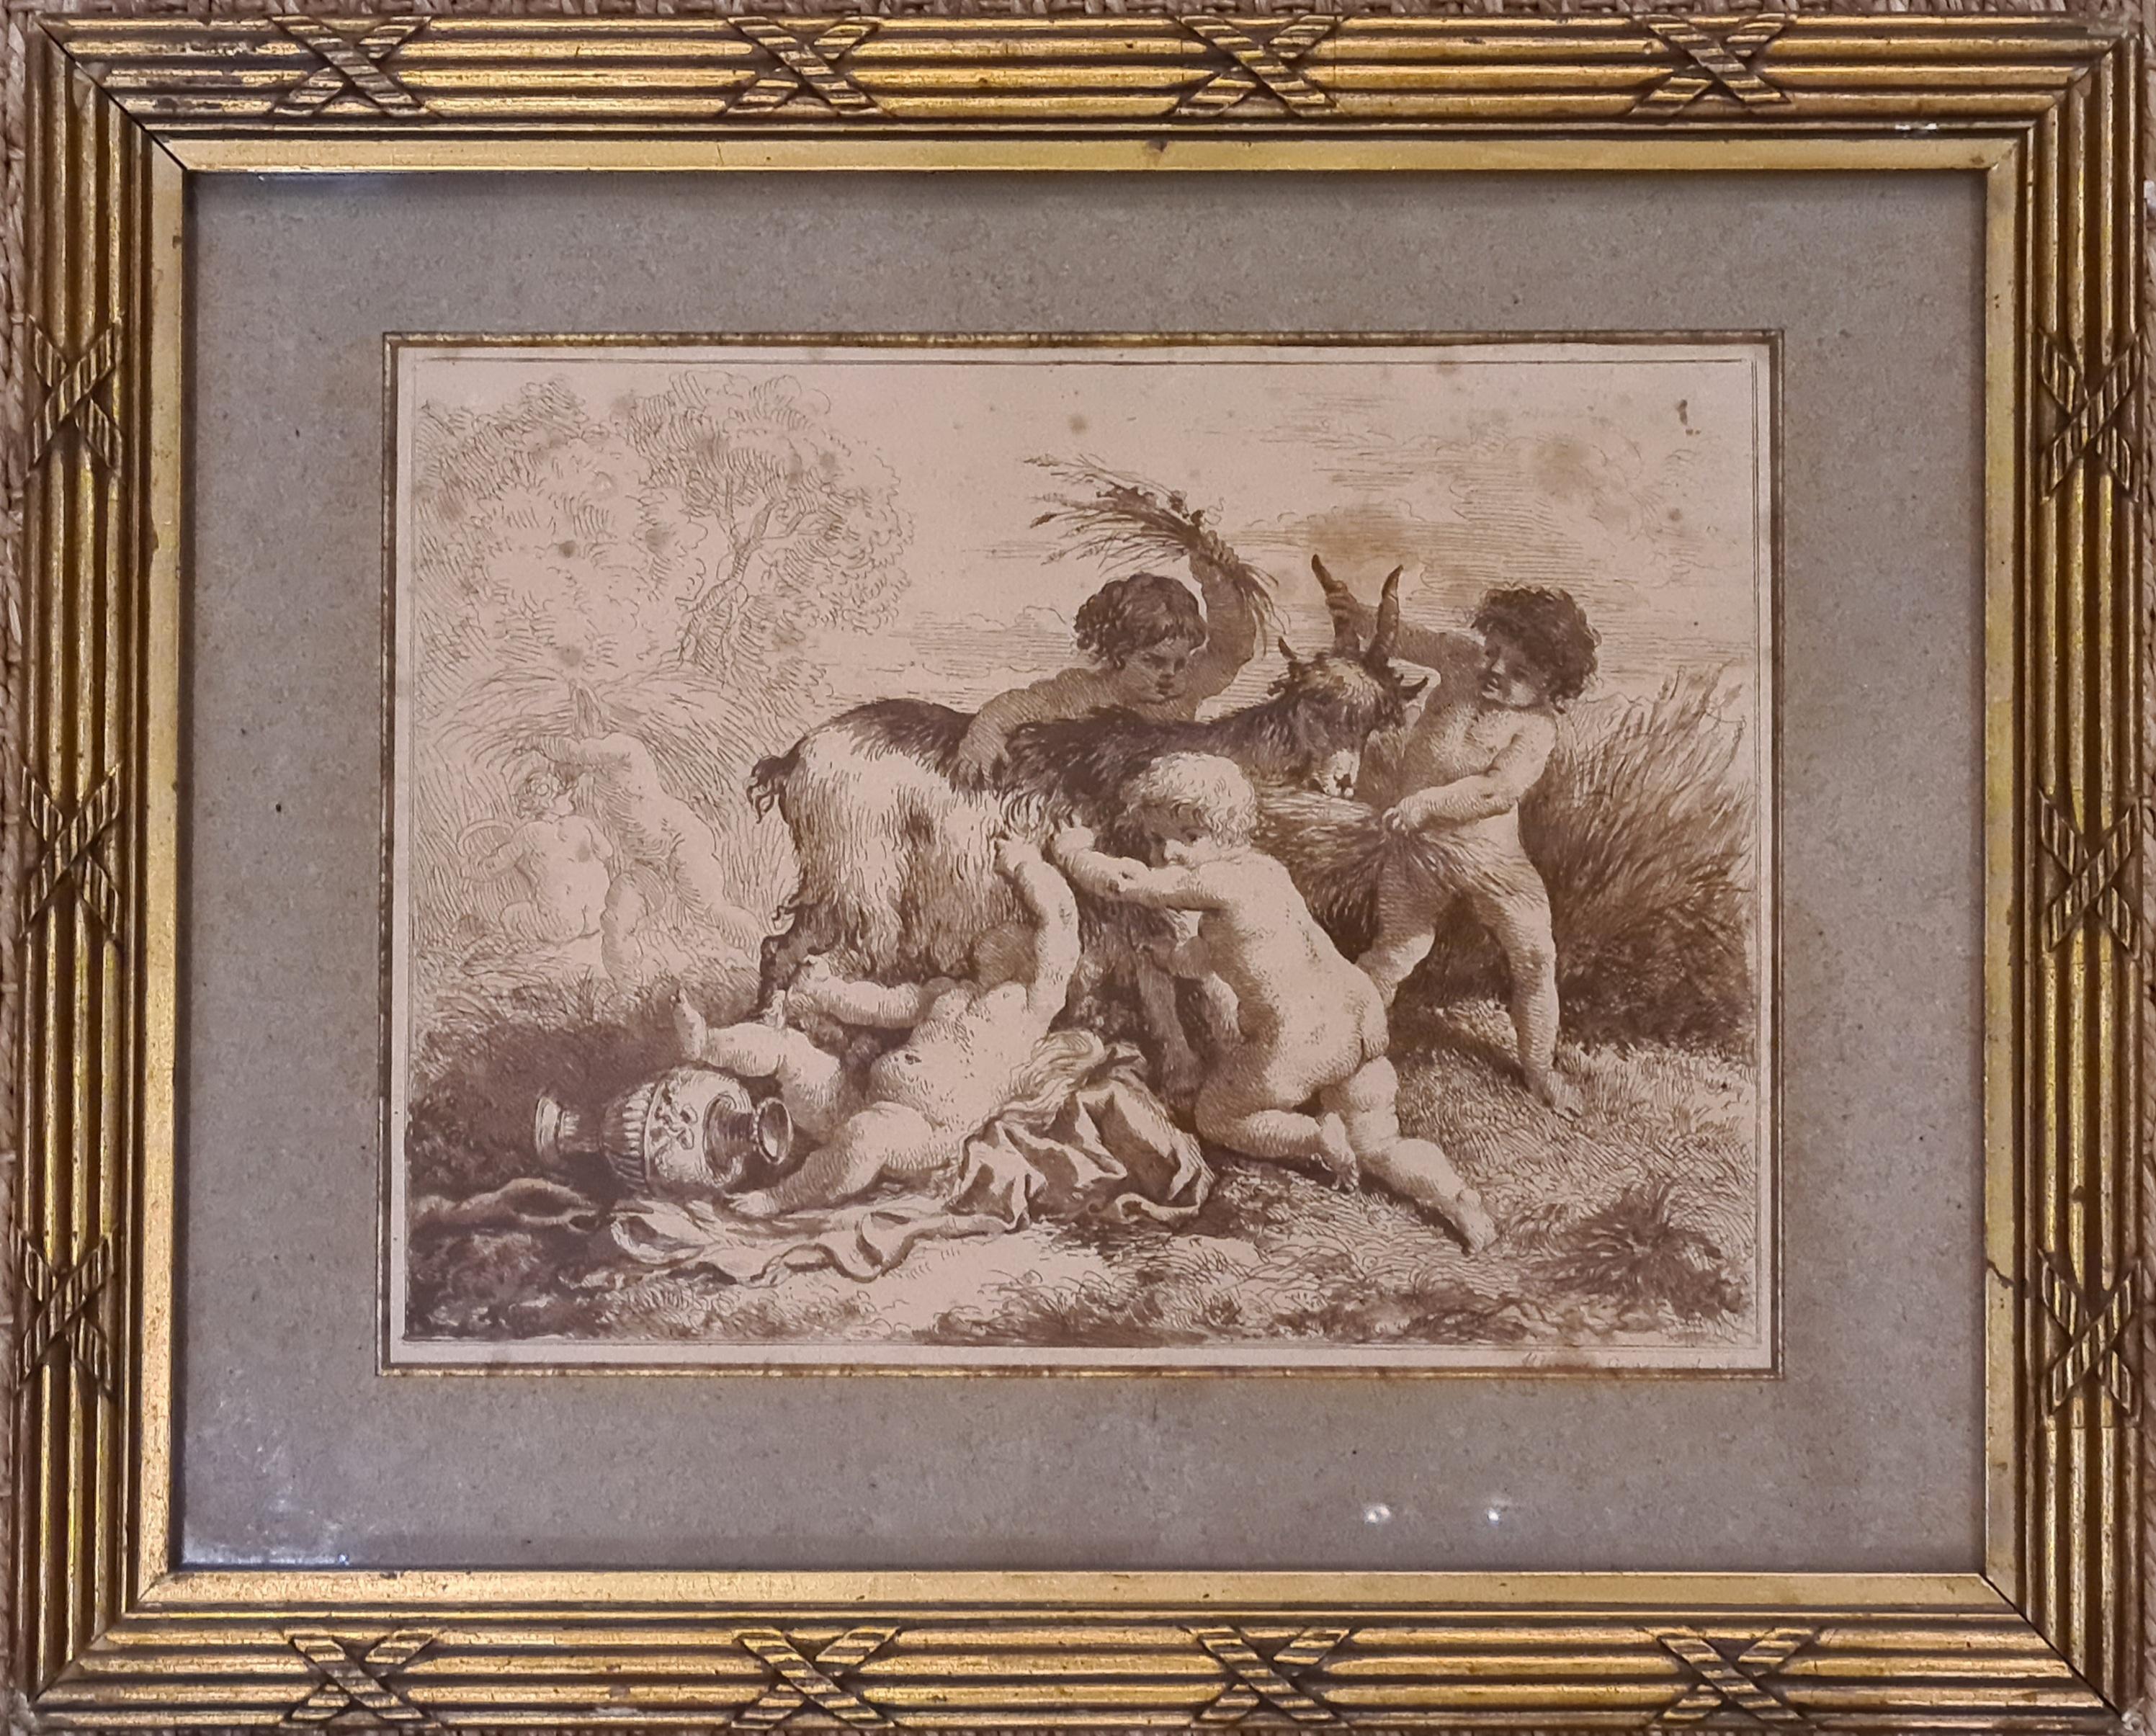 Die Ernte, Cherubs Disporting with a Goat, feines gerahmtes Stich aus dem 18. Jahrhundert